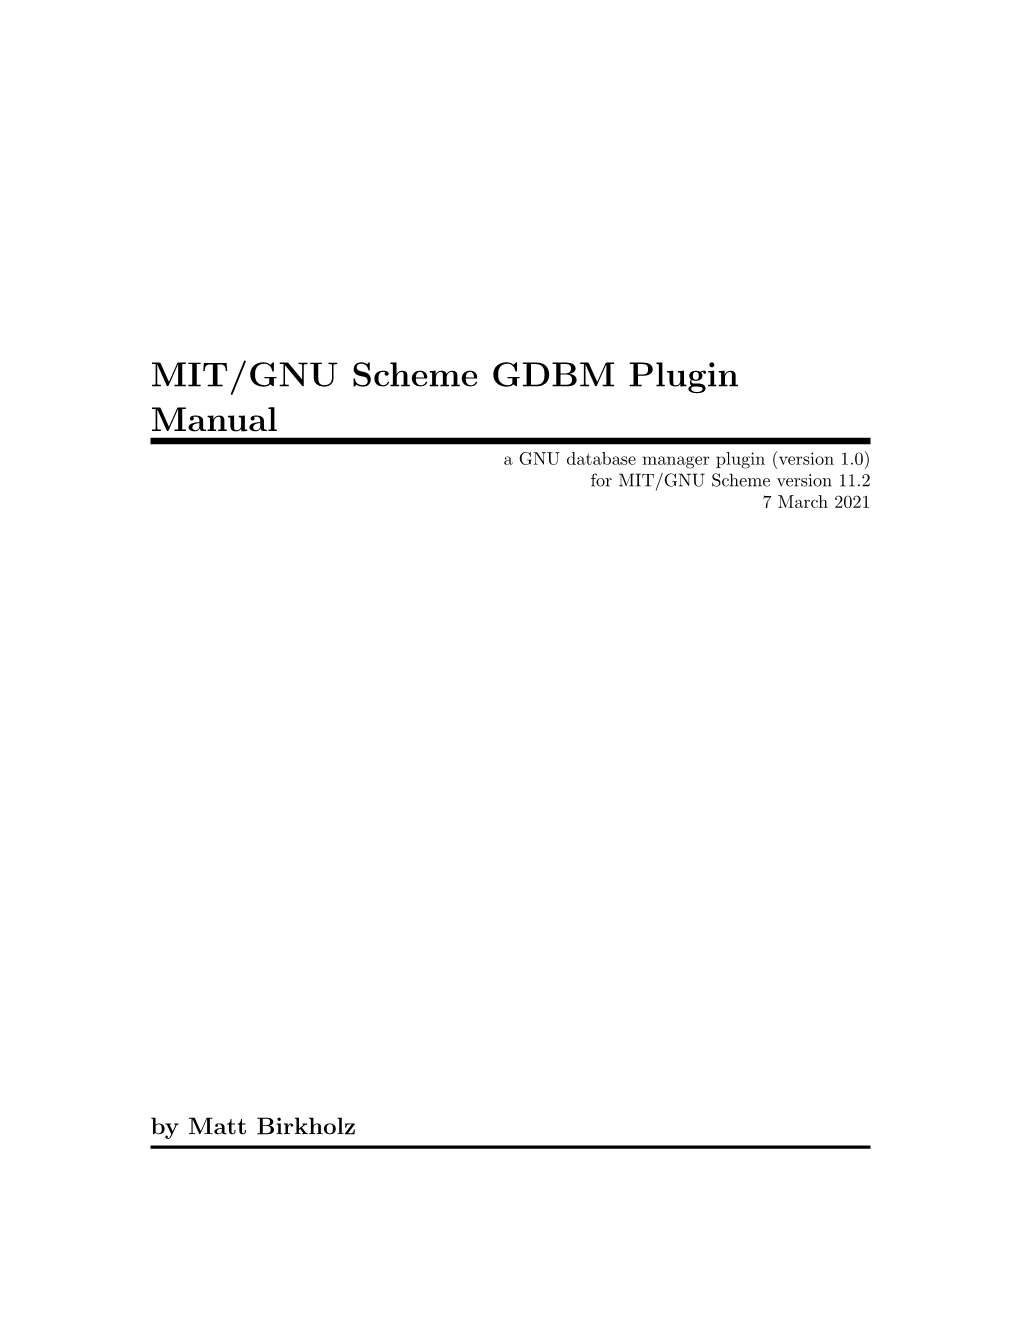 MIT/GNU Scheme GDBM Plugin Manual a GNU Database Manager Plugin (Version 1.0) for MIT/GNU Scheme Version 11.2 7 March 2021